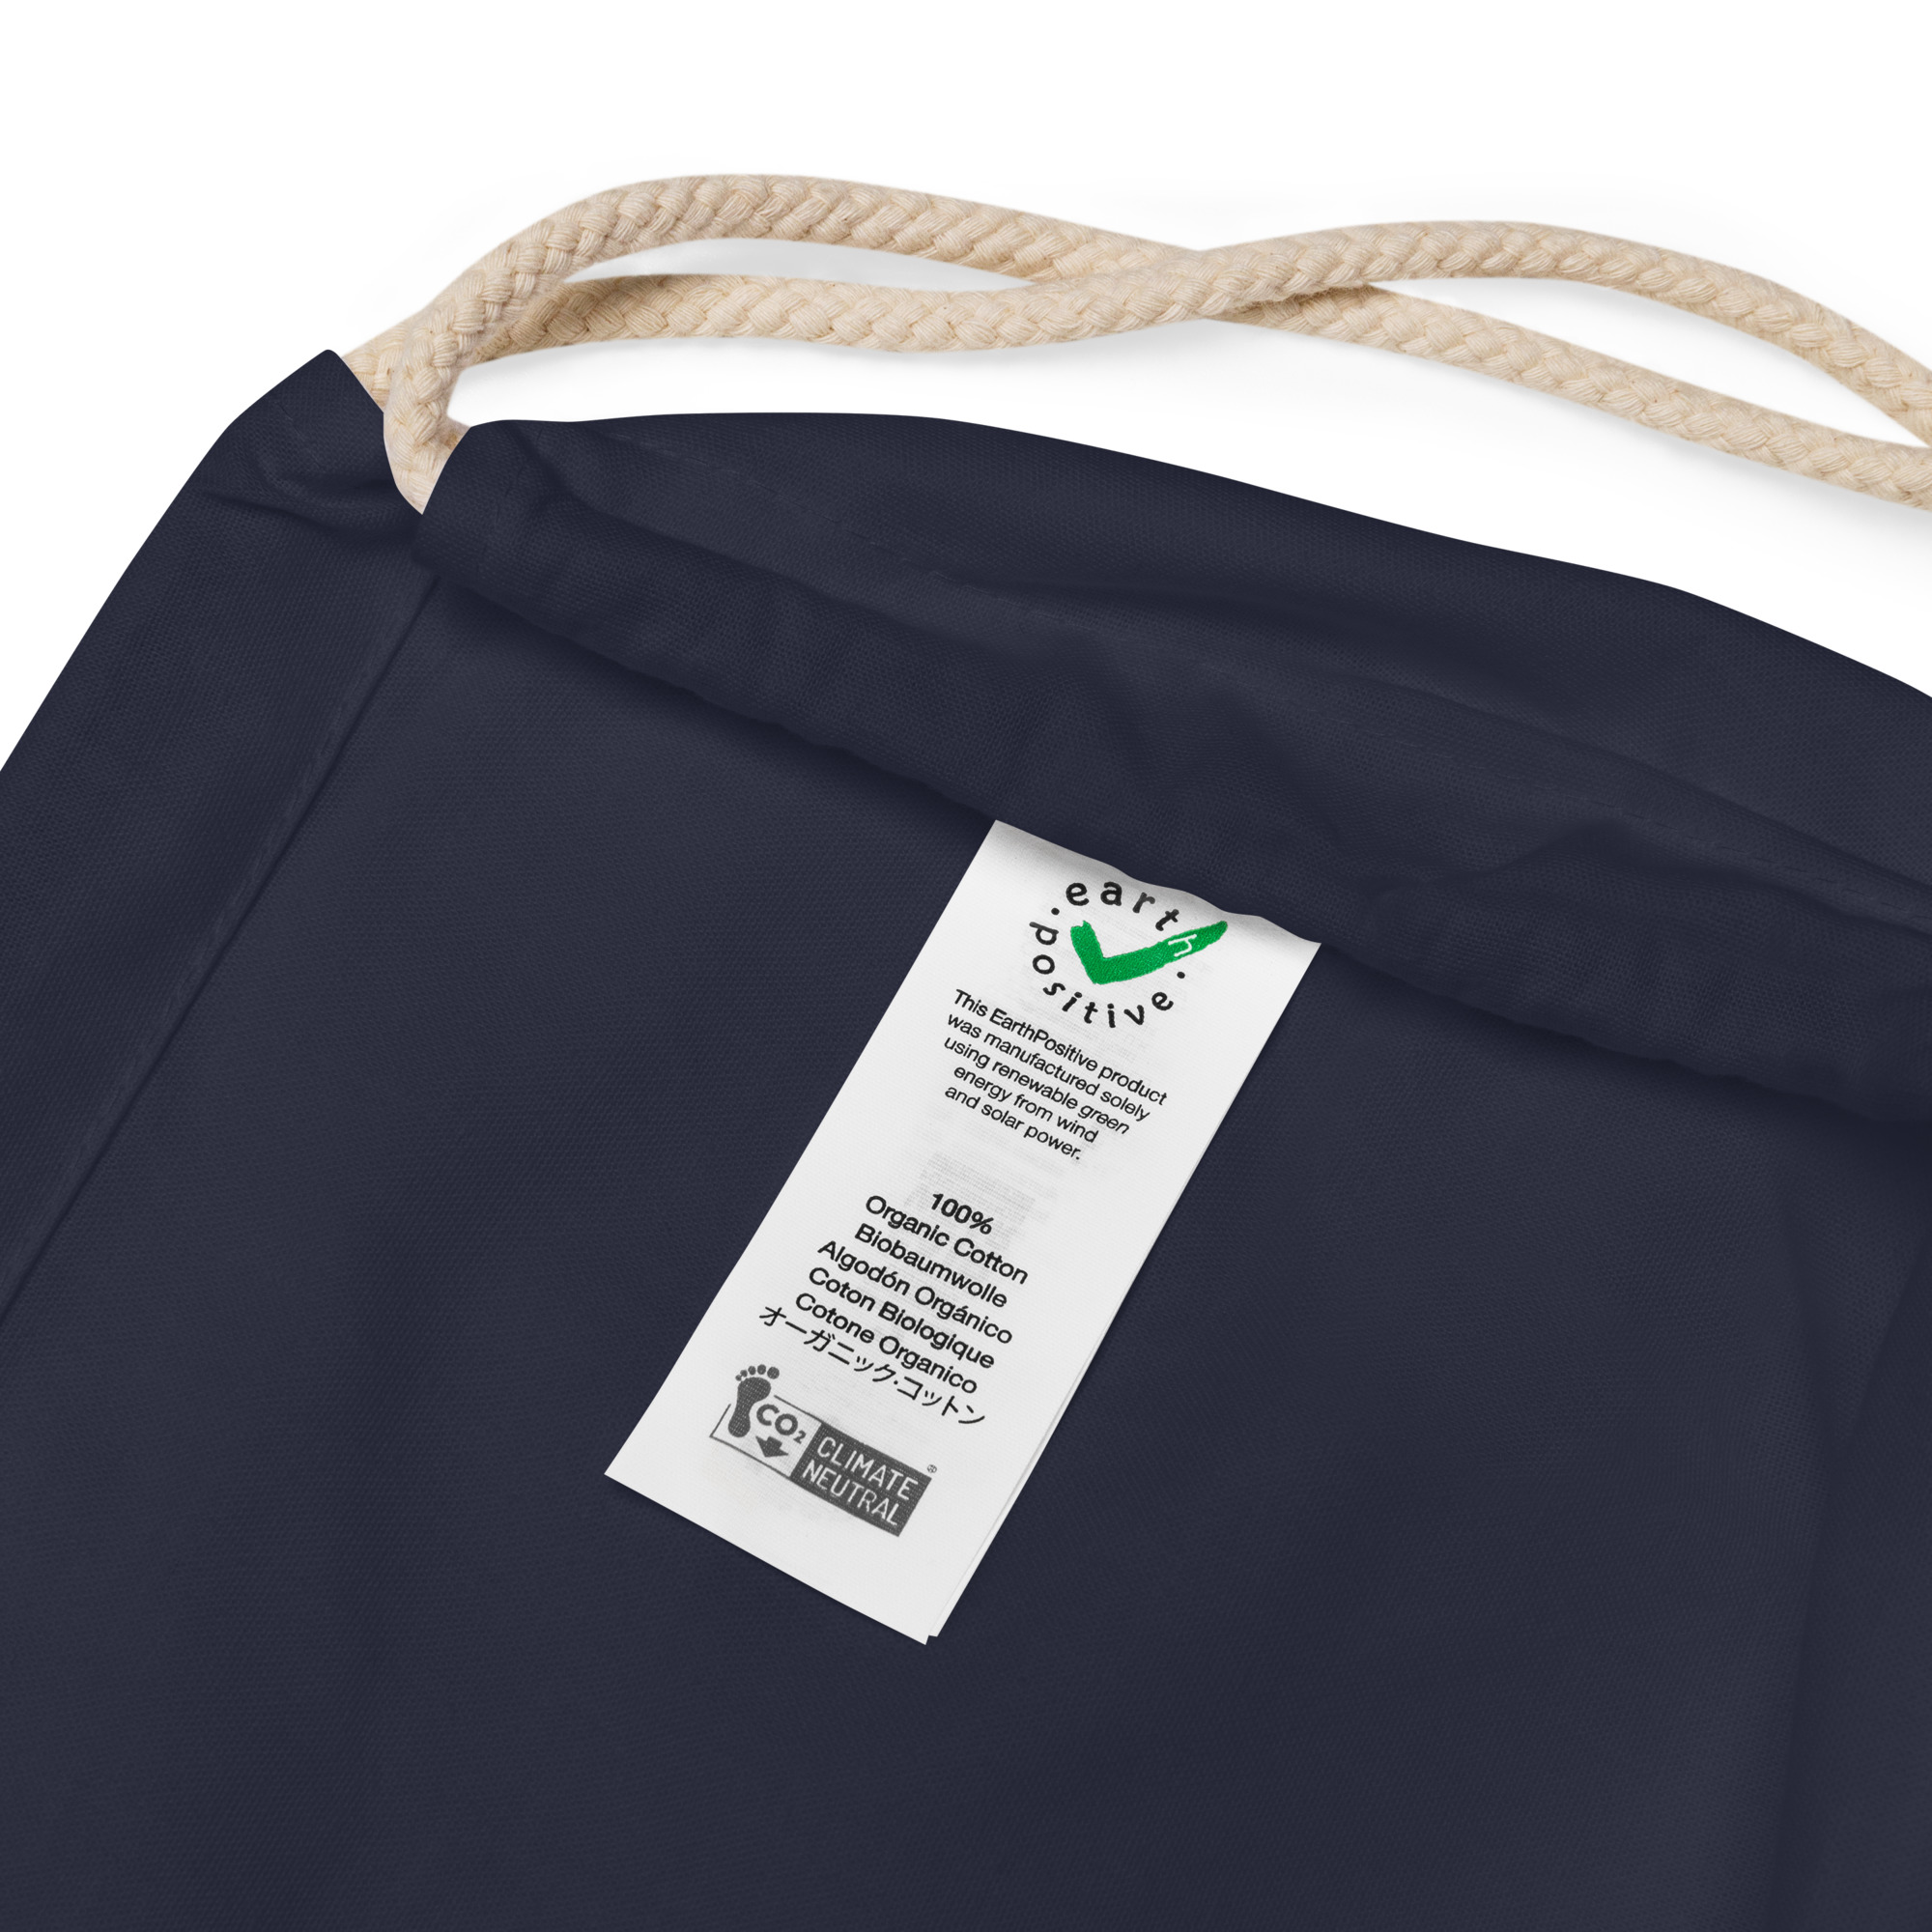 organic-cotton-drawstring-bag-navy-product-details-641d3012a7f8f.jpg